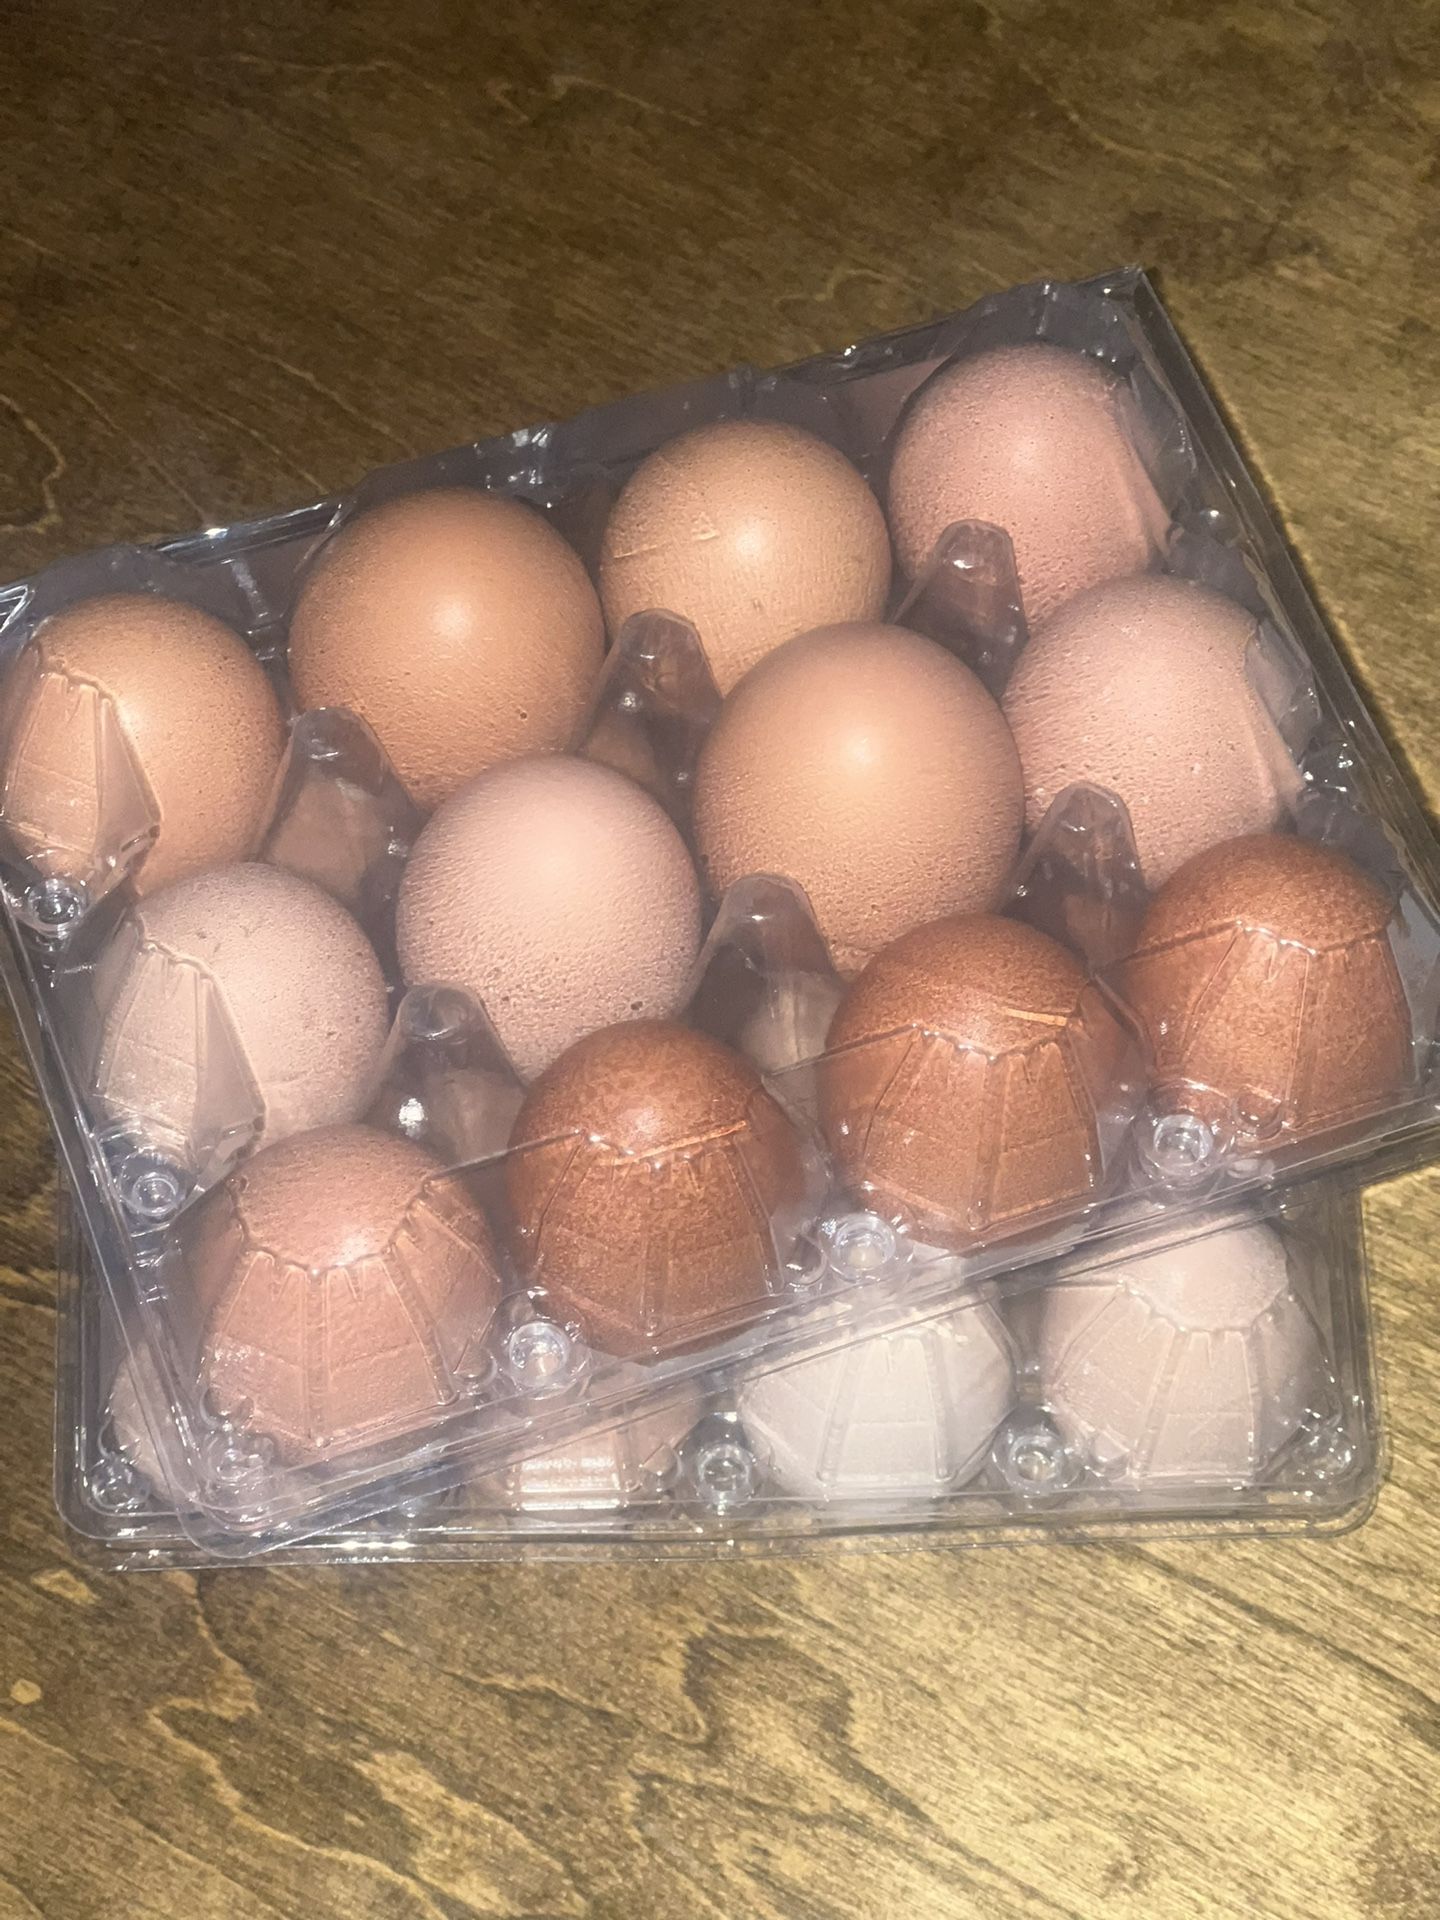 Huevos/ Eggs